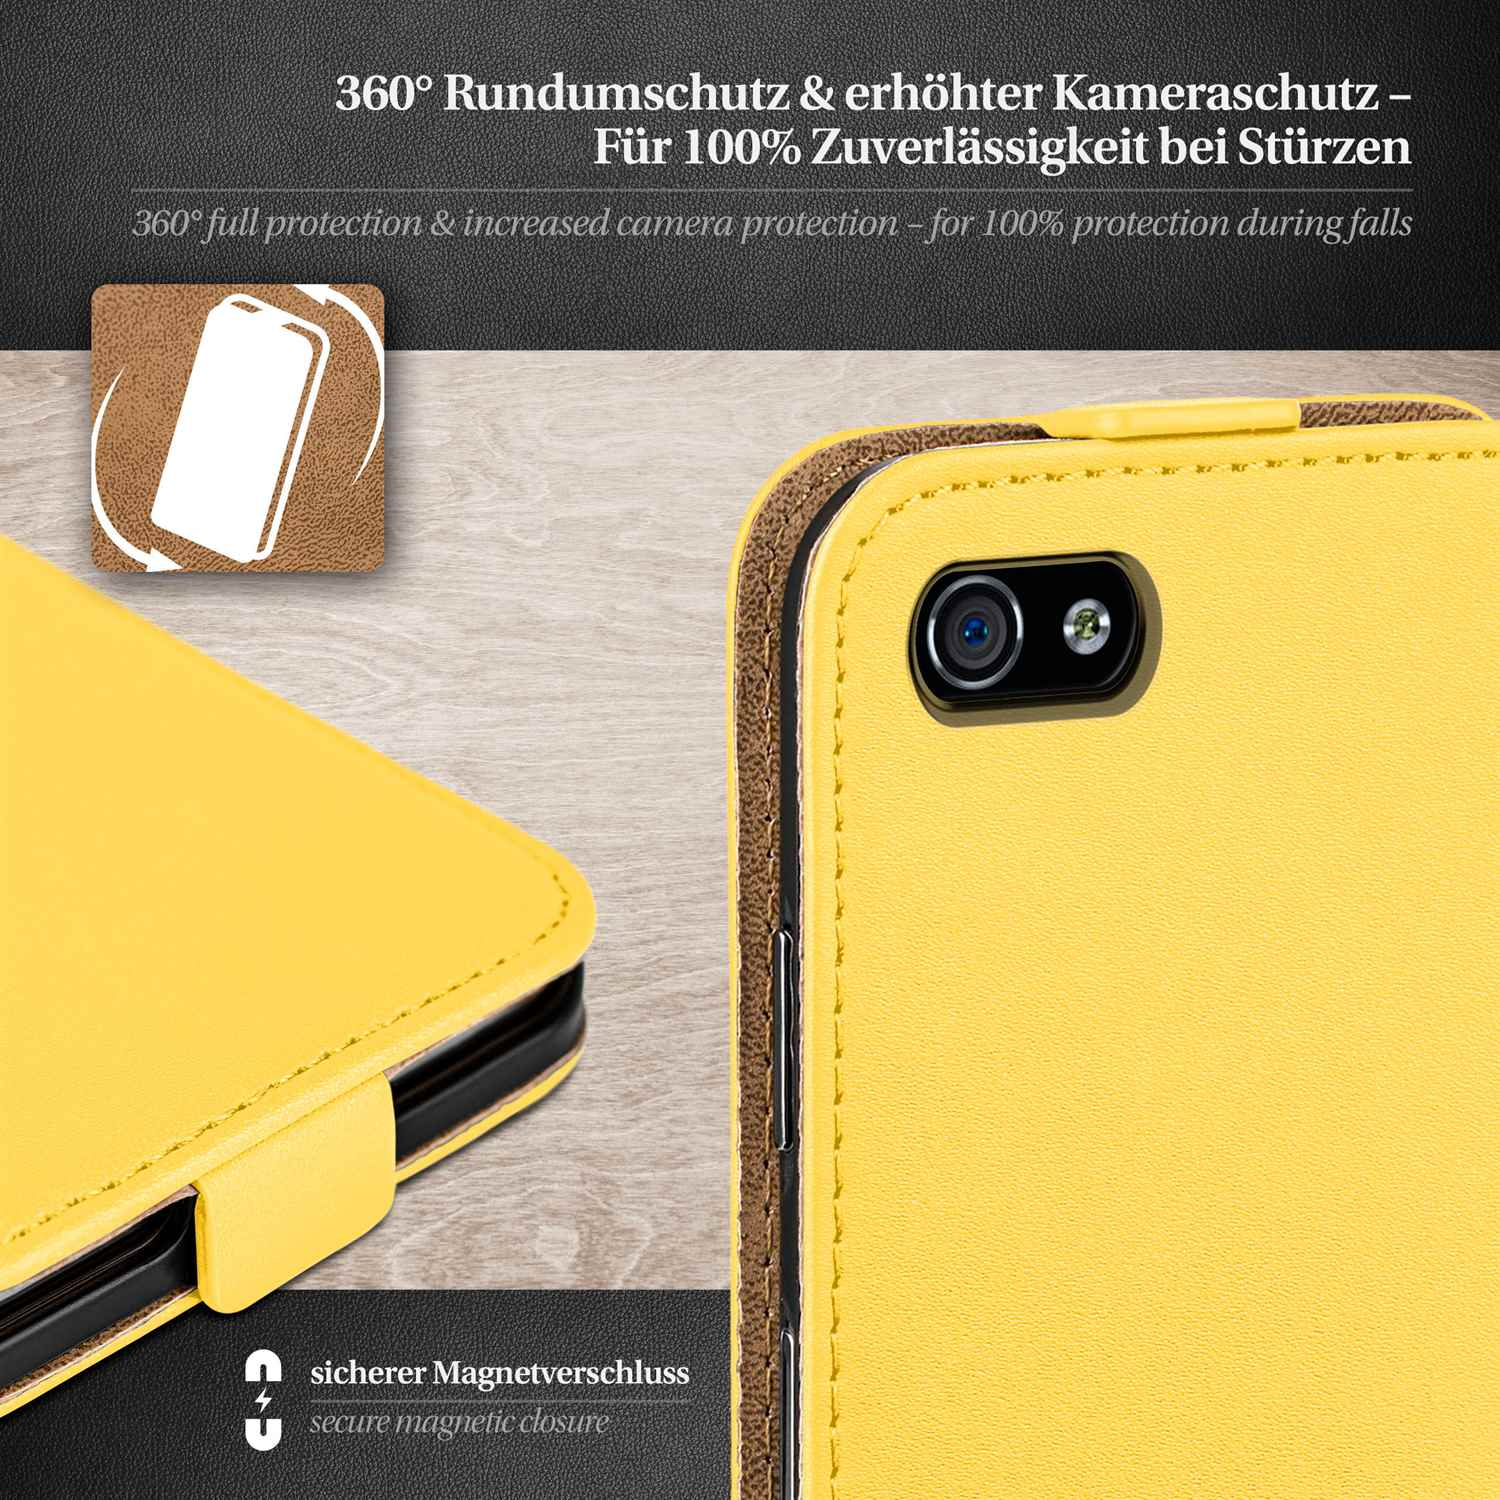 MOEX Flip Case, 4S, Cover, iPhone Apple, Acid-Yellow Flip